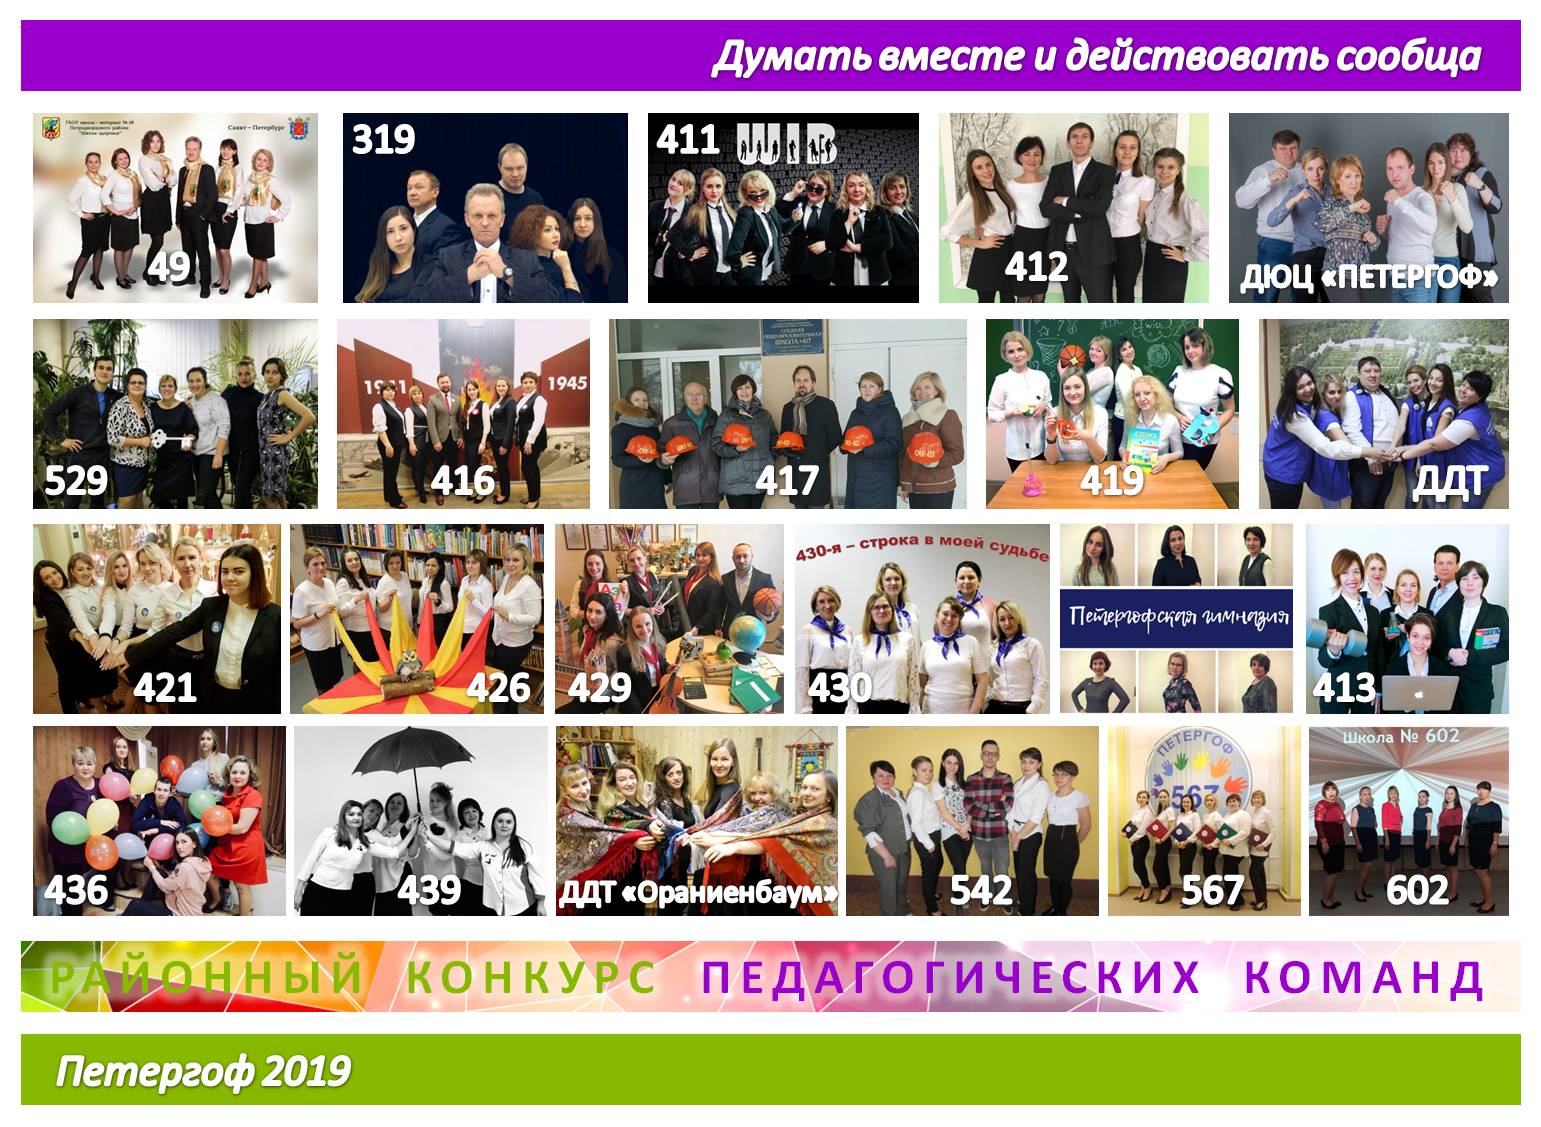 Педагогические команды образовательных учреждений Петродворцового района